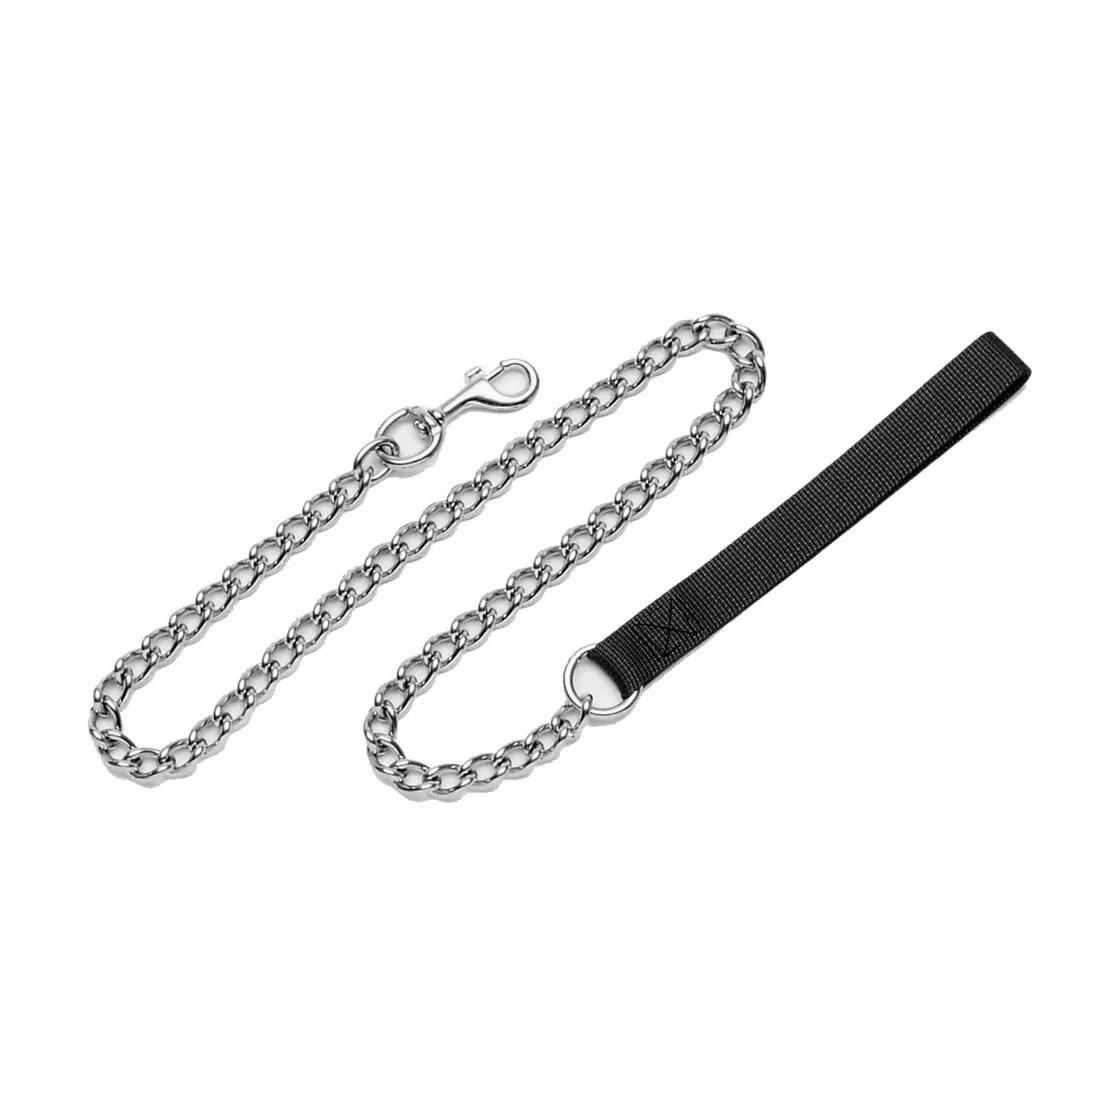 Titan® Chain Dog Leash with Nylon Handle